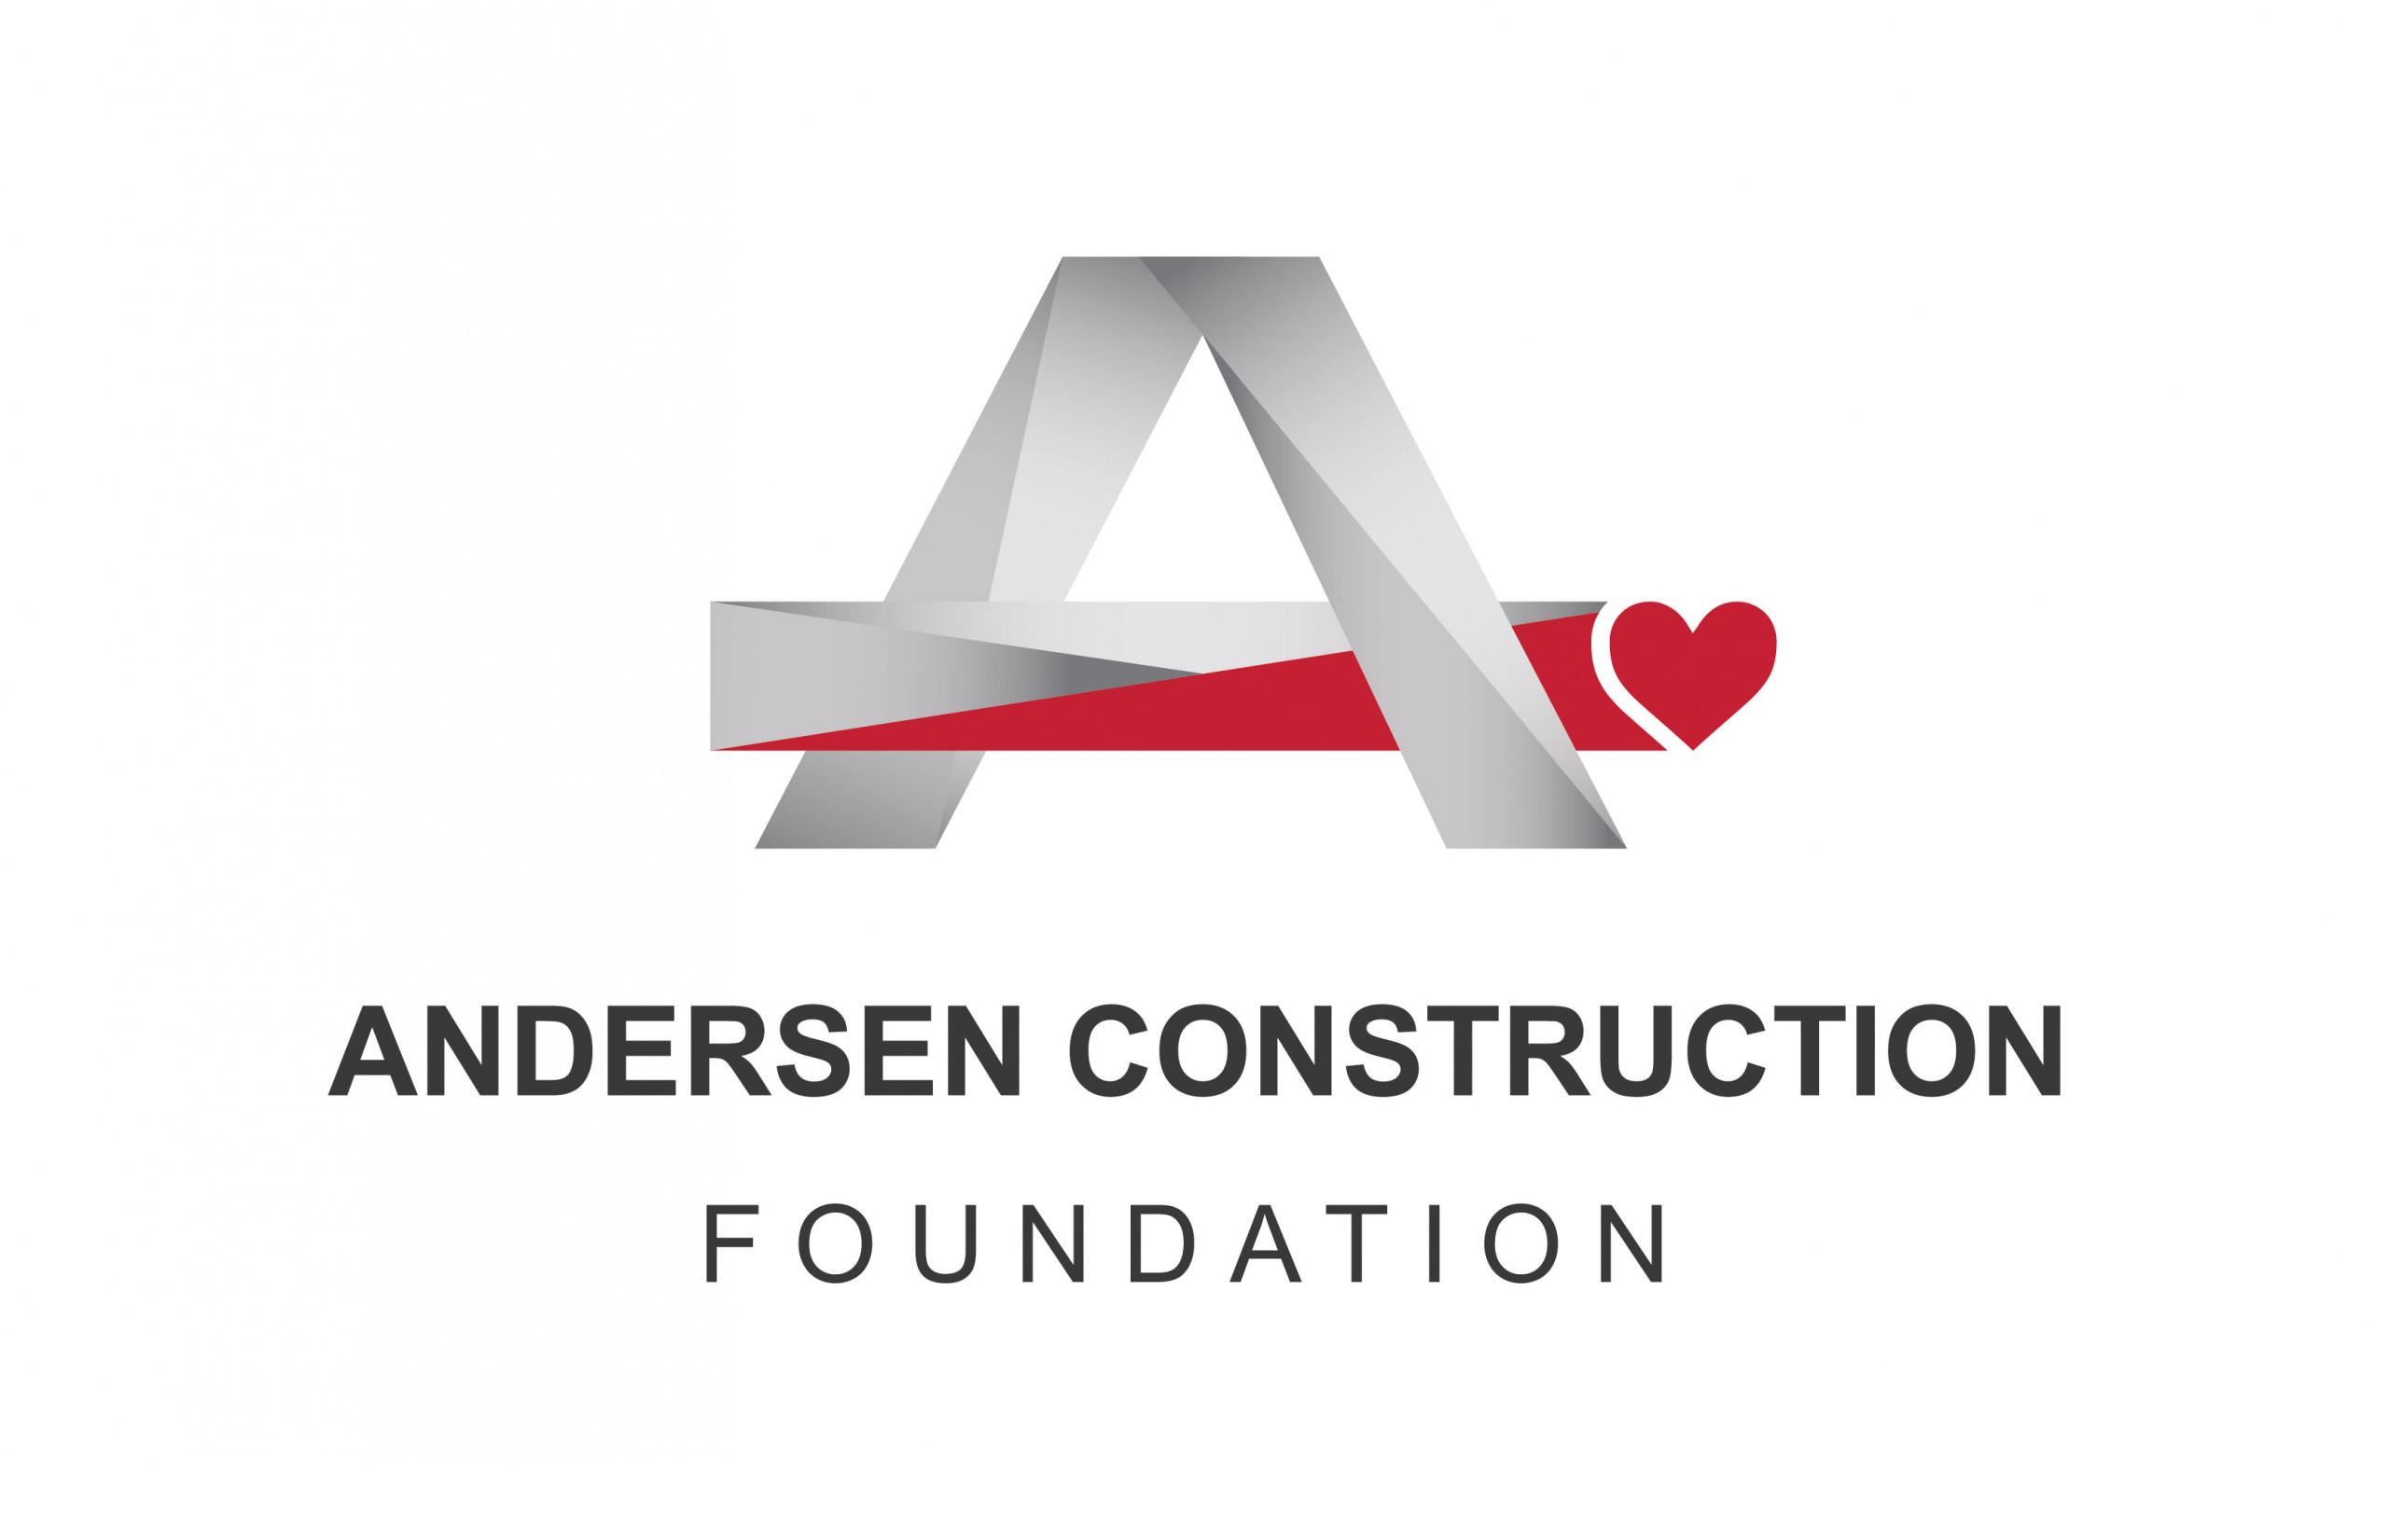 Andersen Construction Foundation logo